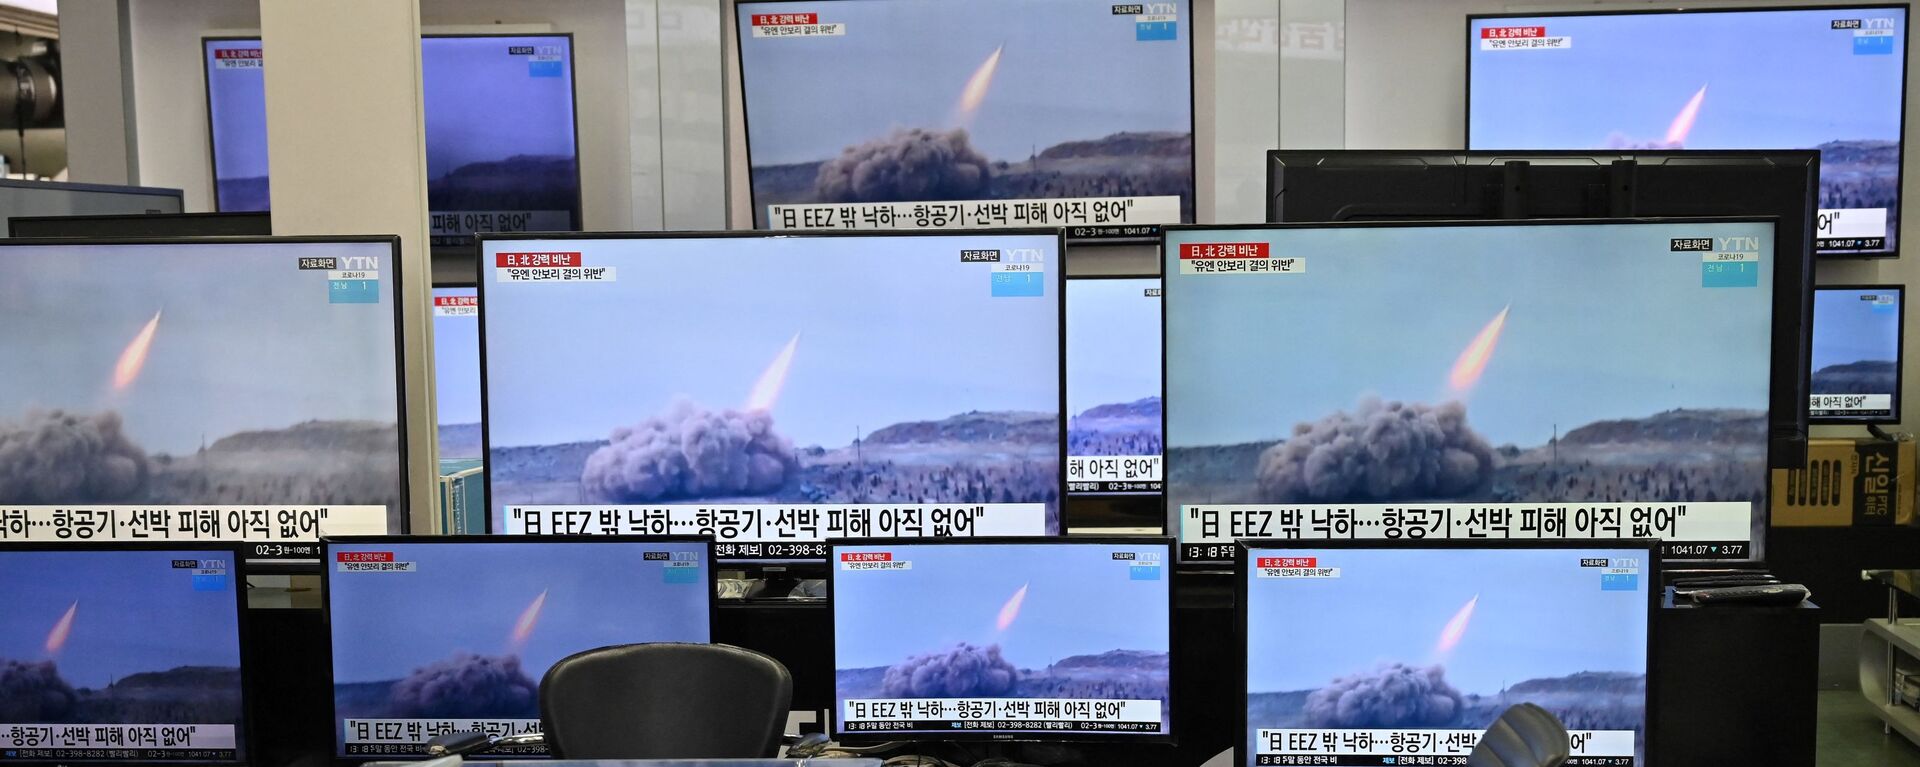 کوریای شمالی یک موشک بالستیک دیگر پرتاب کرد + تصاویر - اسپوتنیک افغانستان  , 1920, 20.10.2021